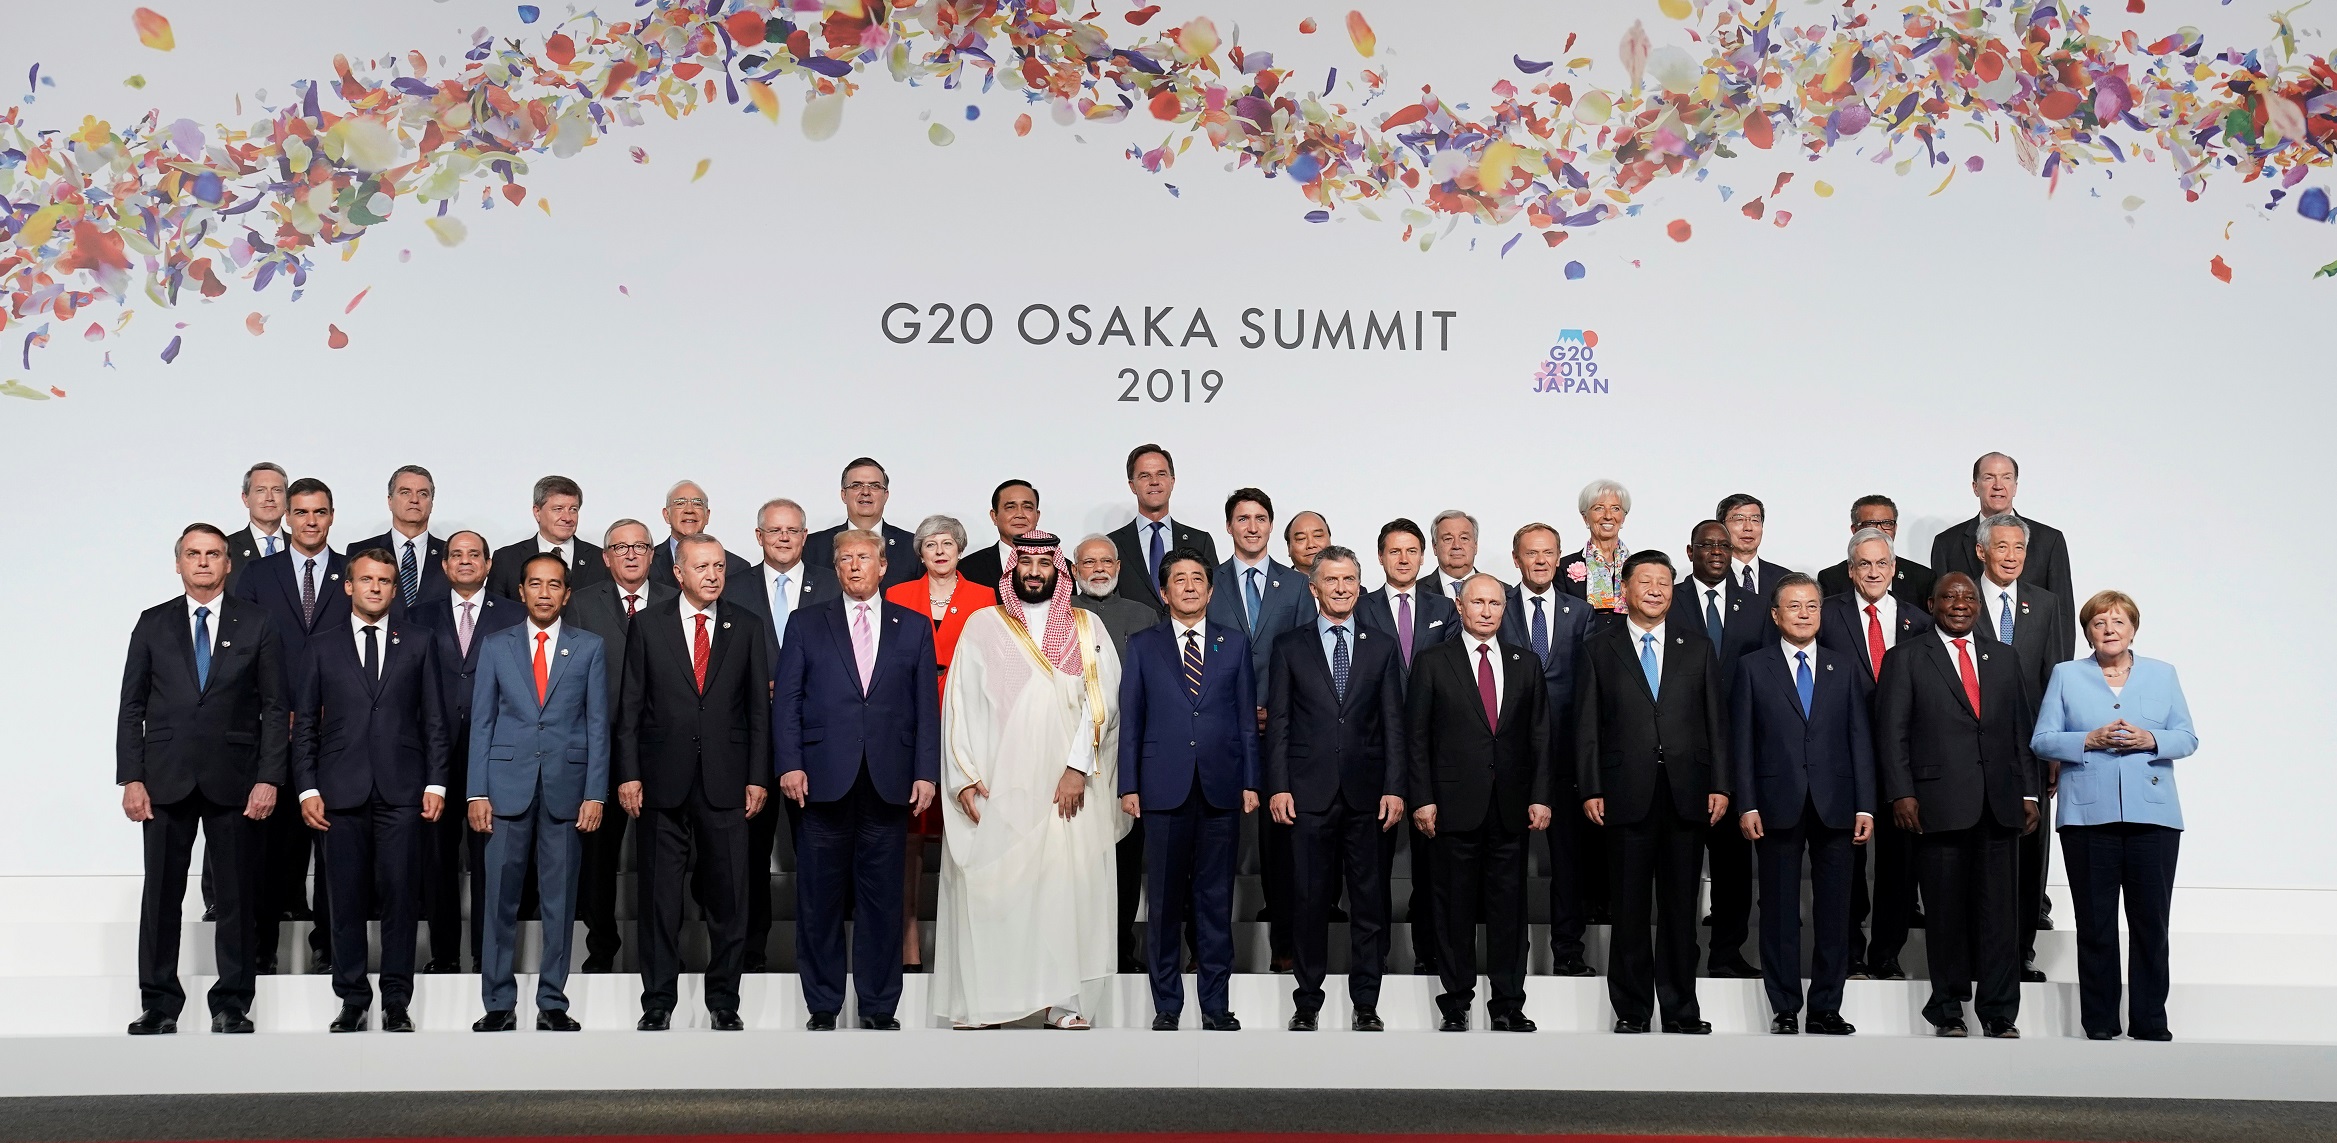 участники саммита G20